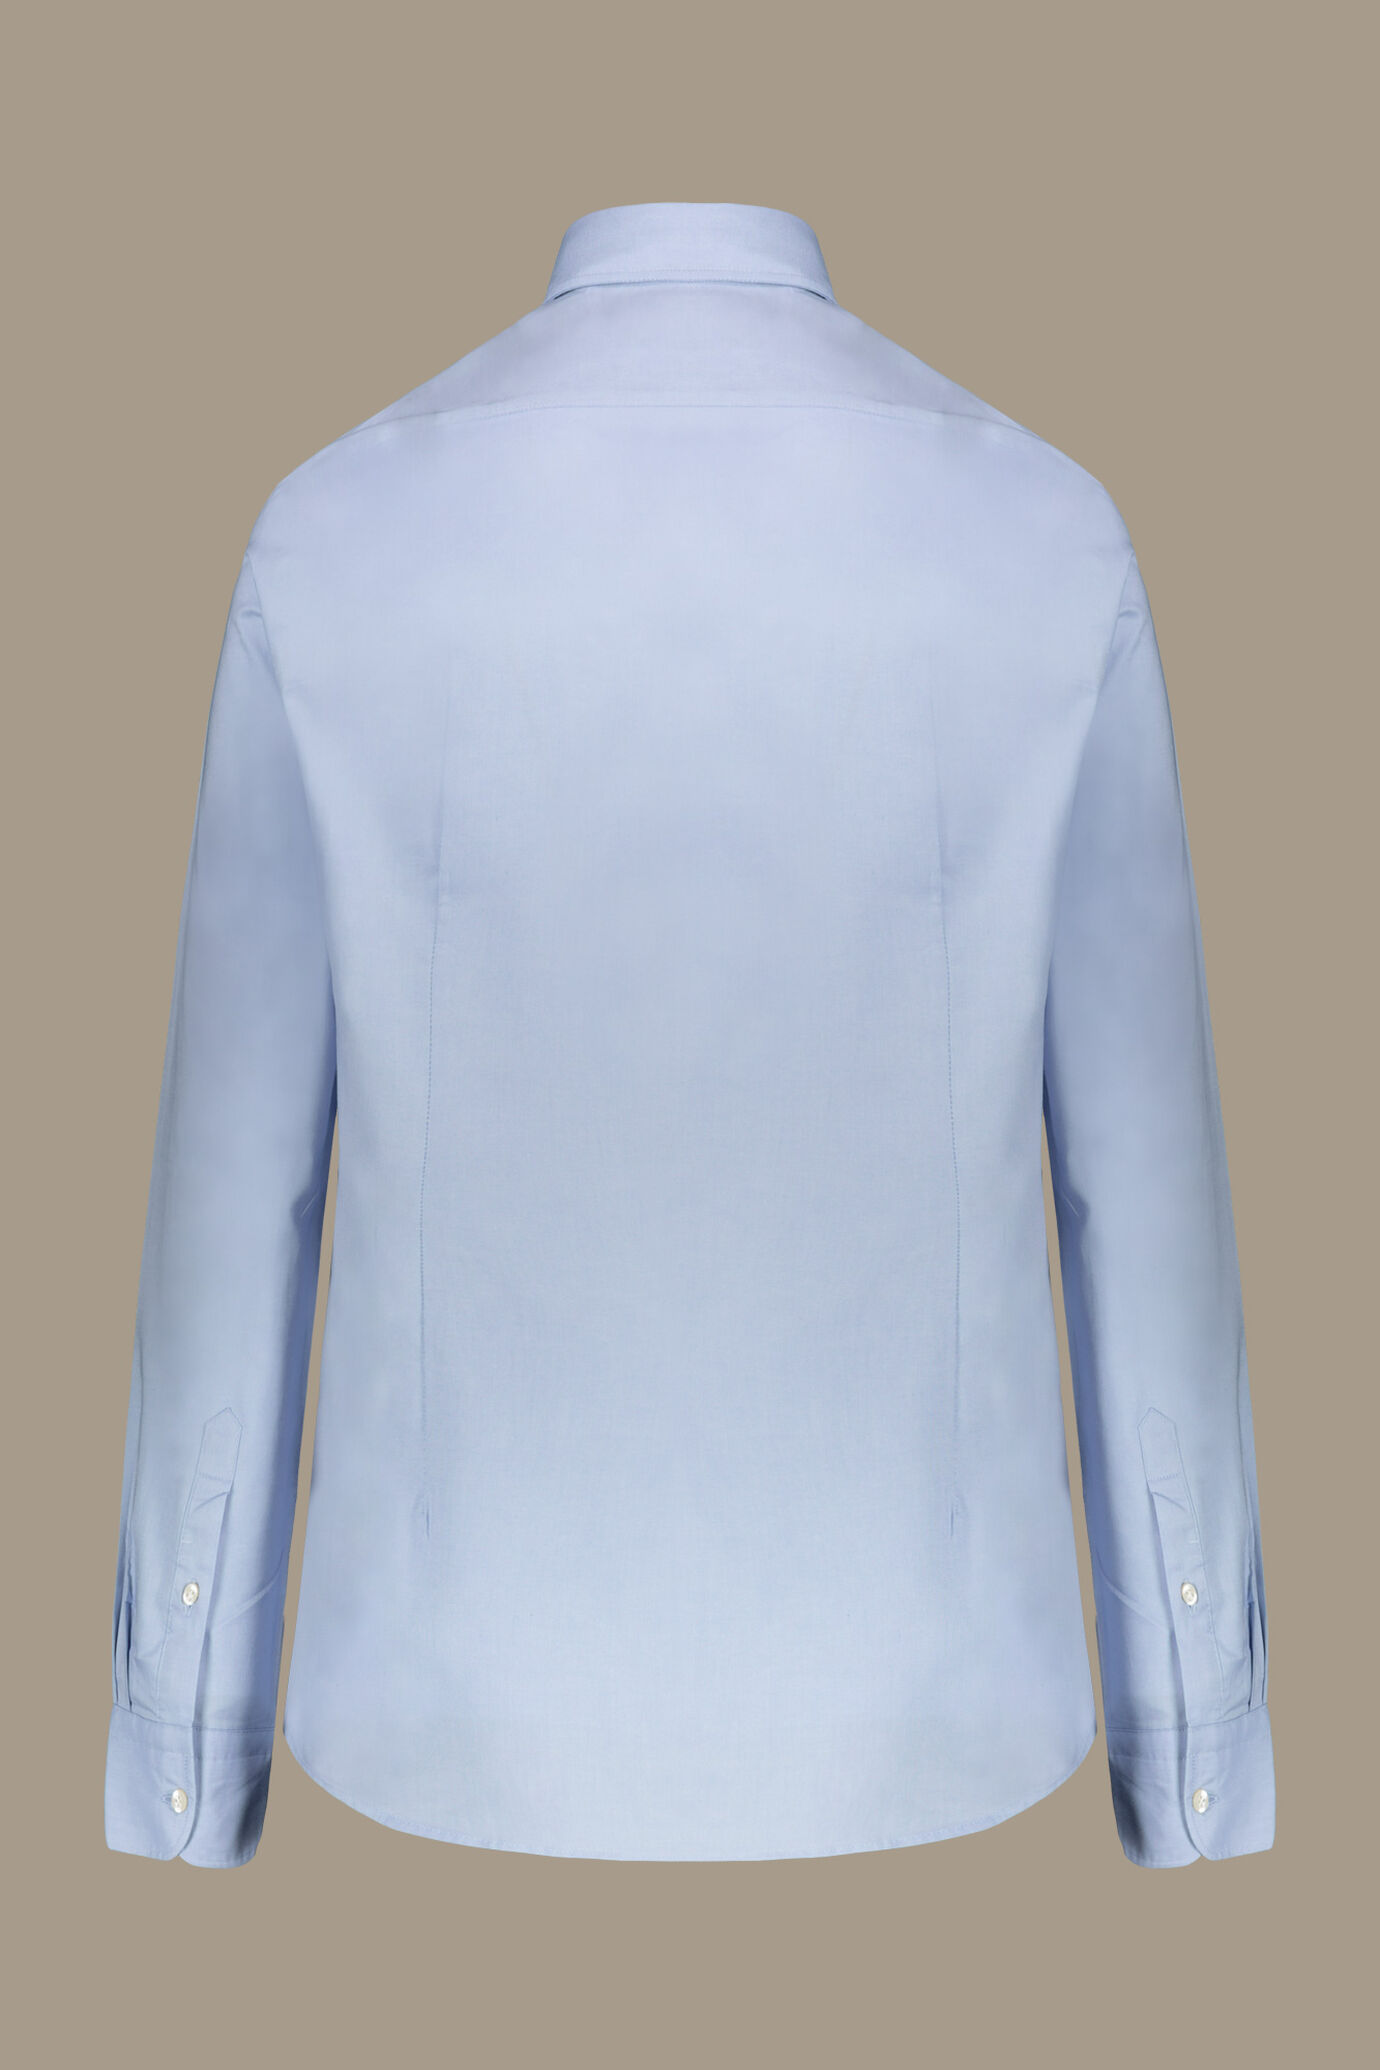 Camicia classica lavata uomo 100% cotone collo francese tessuto pinpoint image number 1